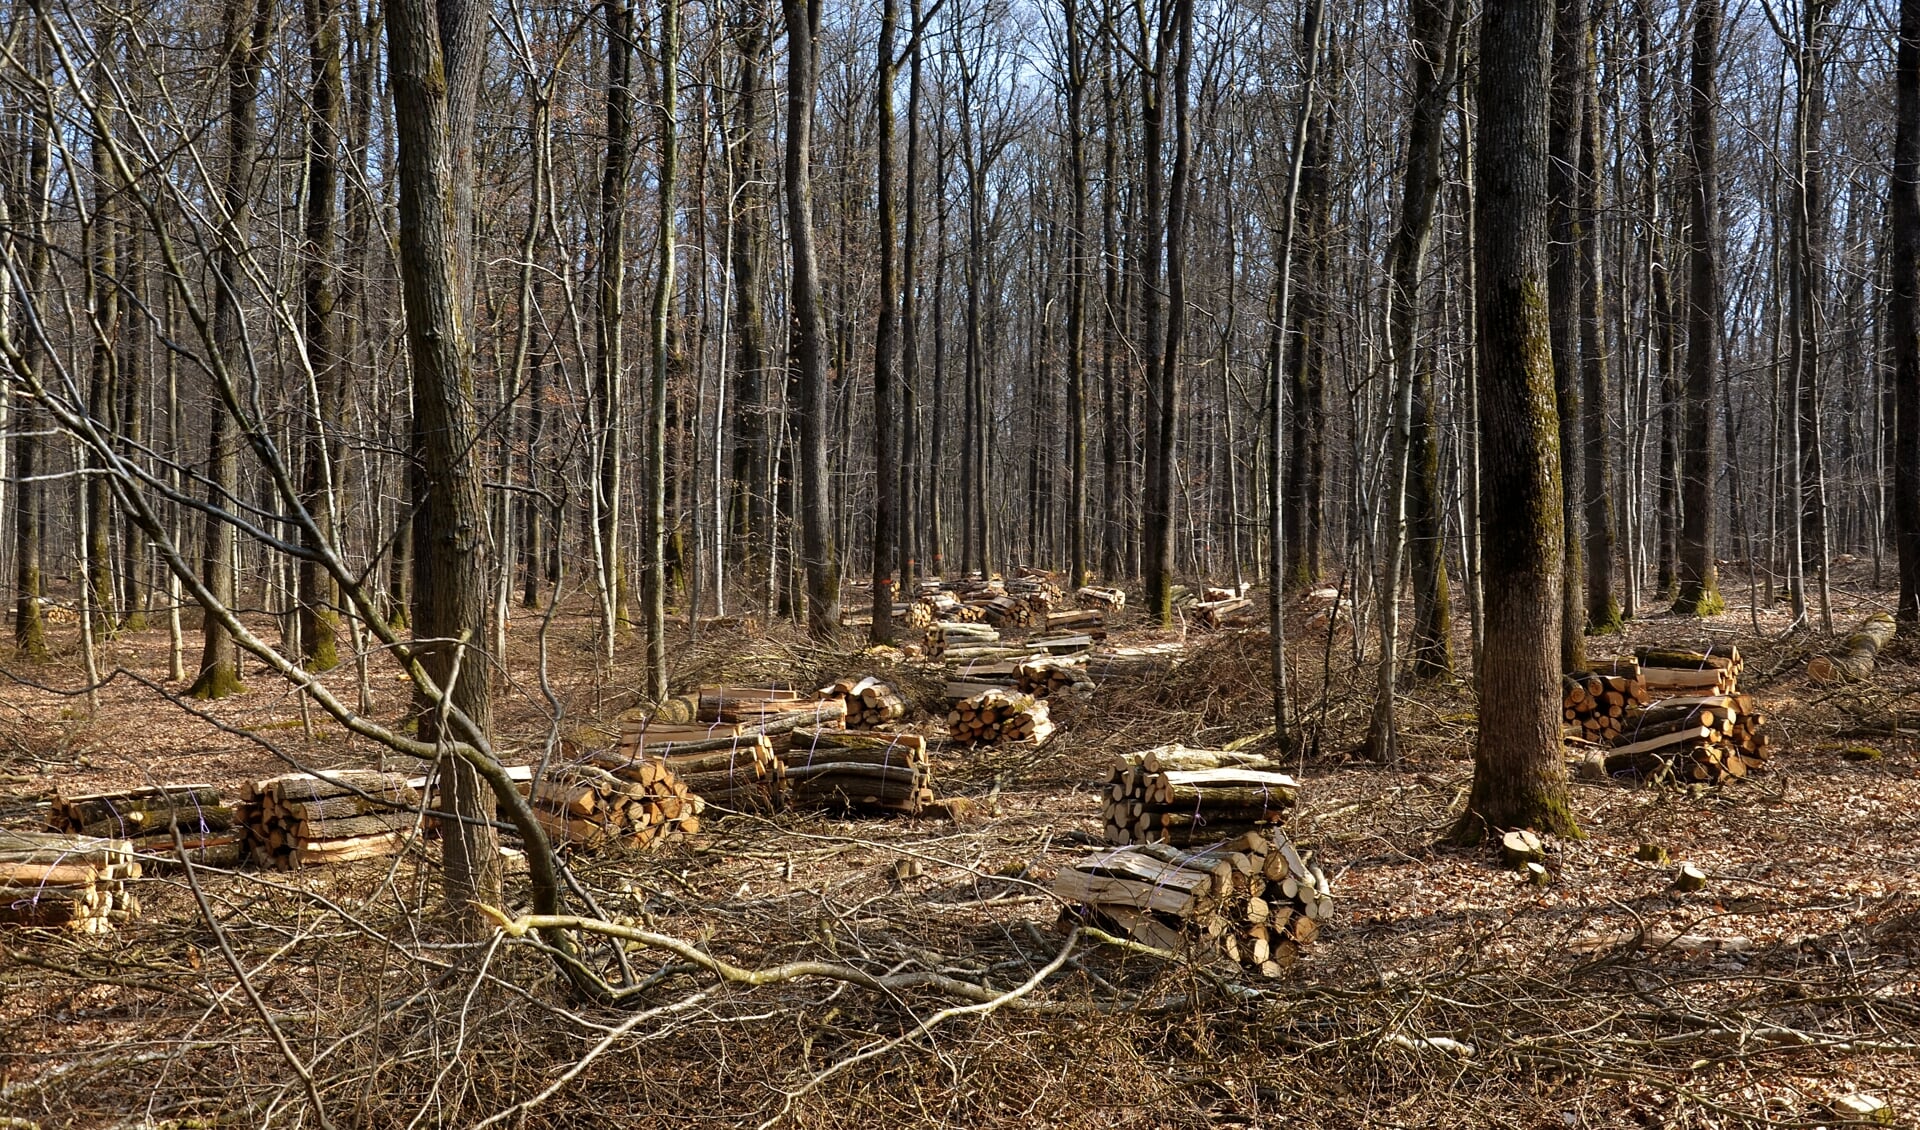 Het hout dat verbrand wordt, betreft snoei- en afvalhout. Maar is dat er voldoende in deze regio? 